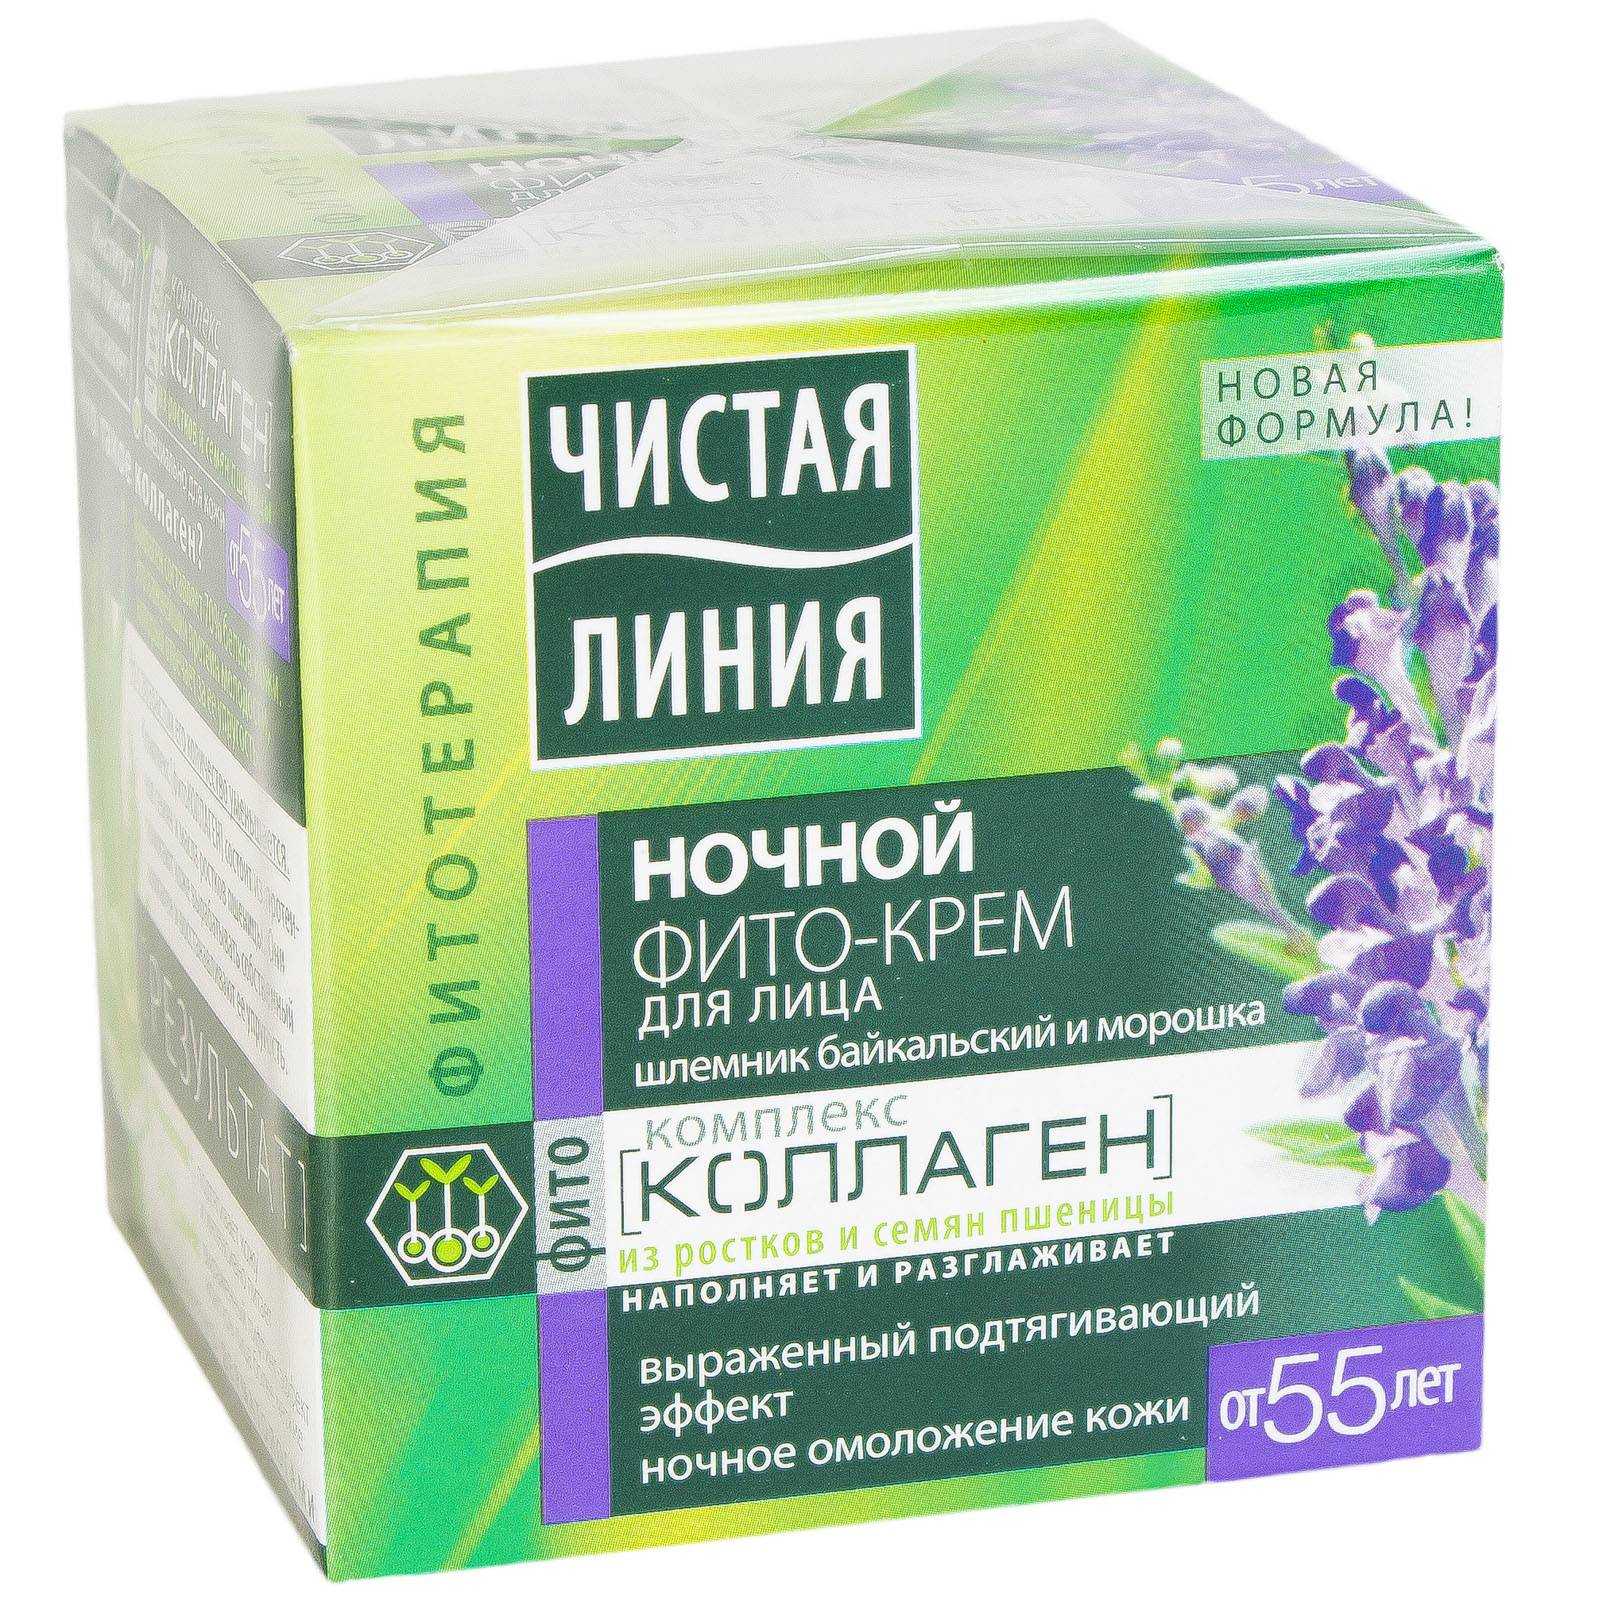 Купить крем-гель для лица «чистая линия» идеальная кожа, 45 мл в москве: цена с доставкой в каталоге интернет аптеки алтаймаг